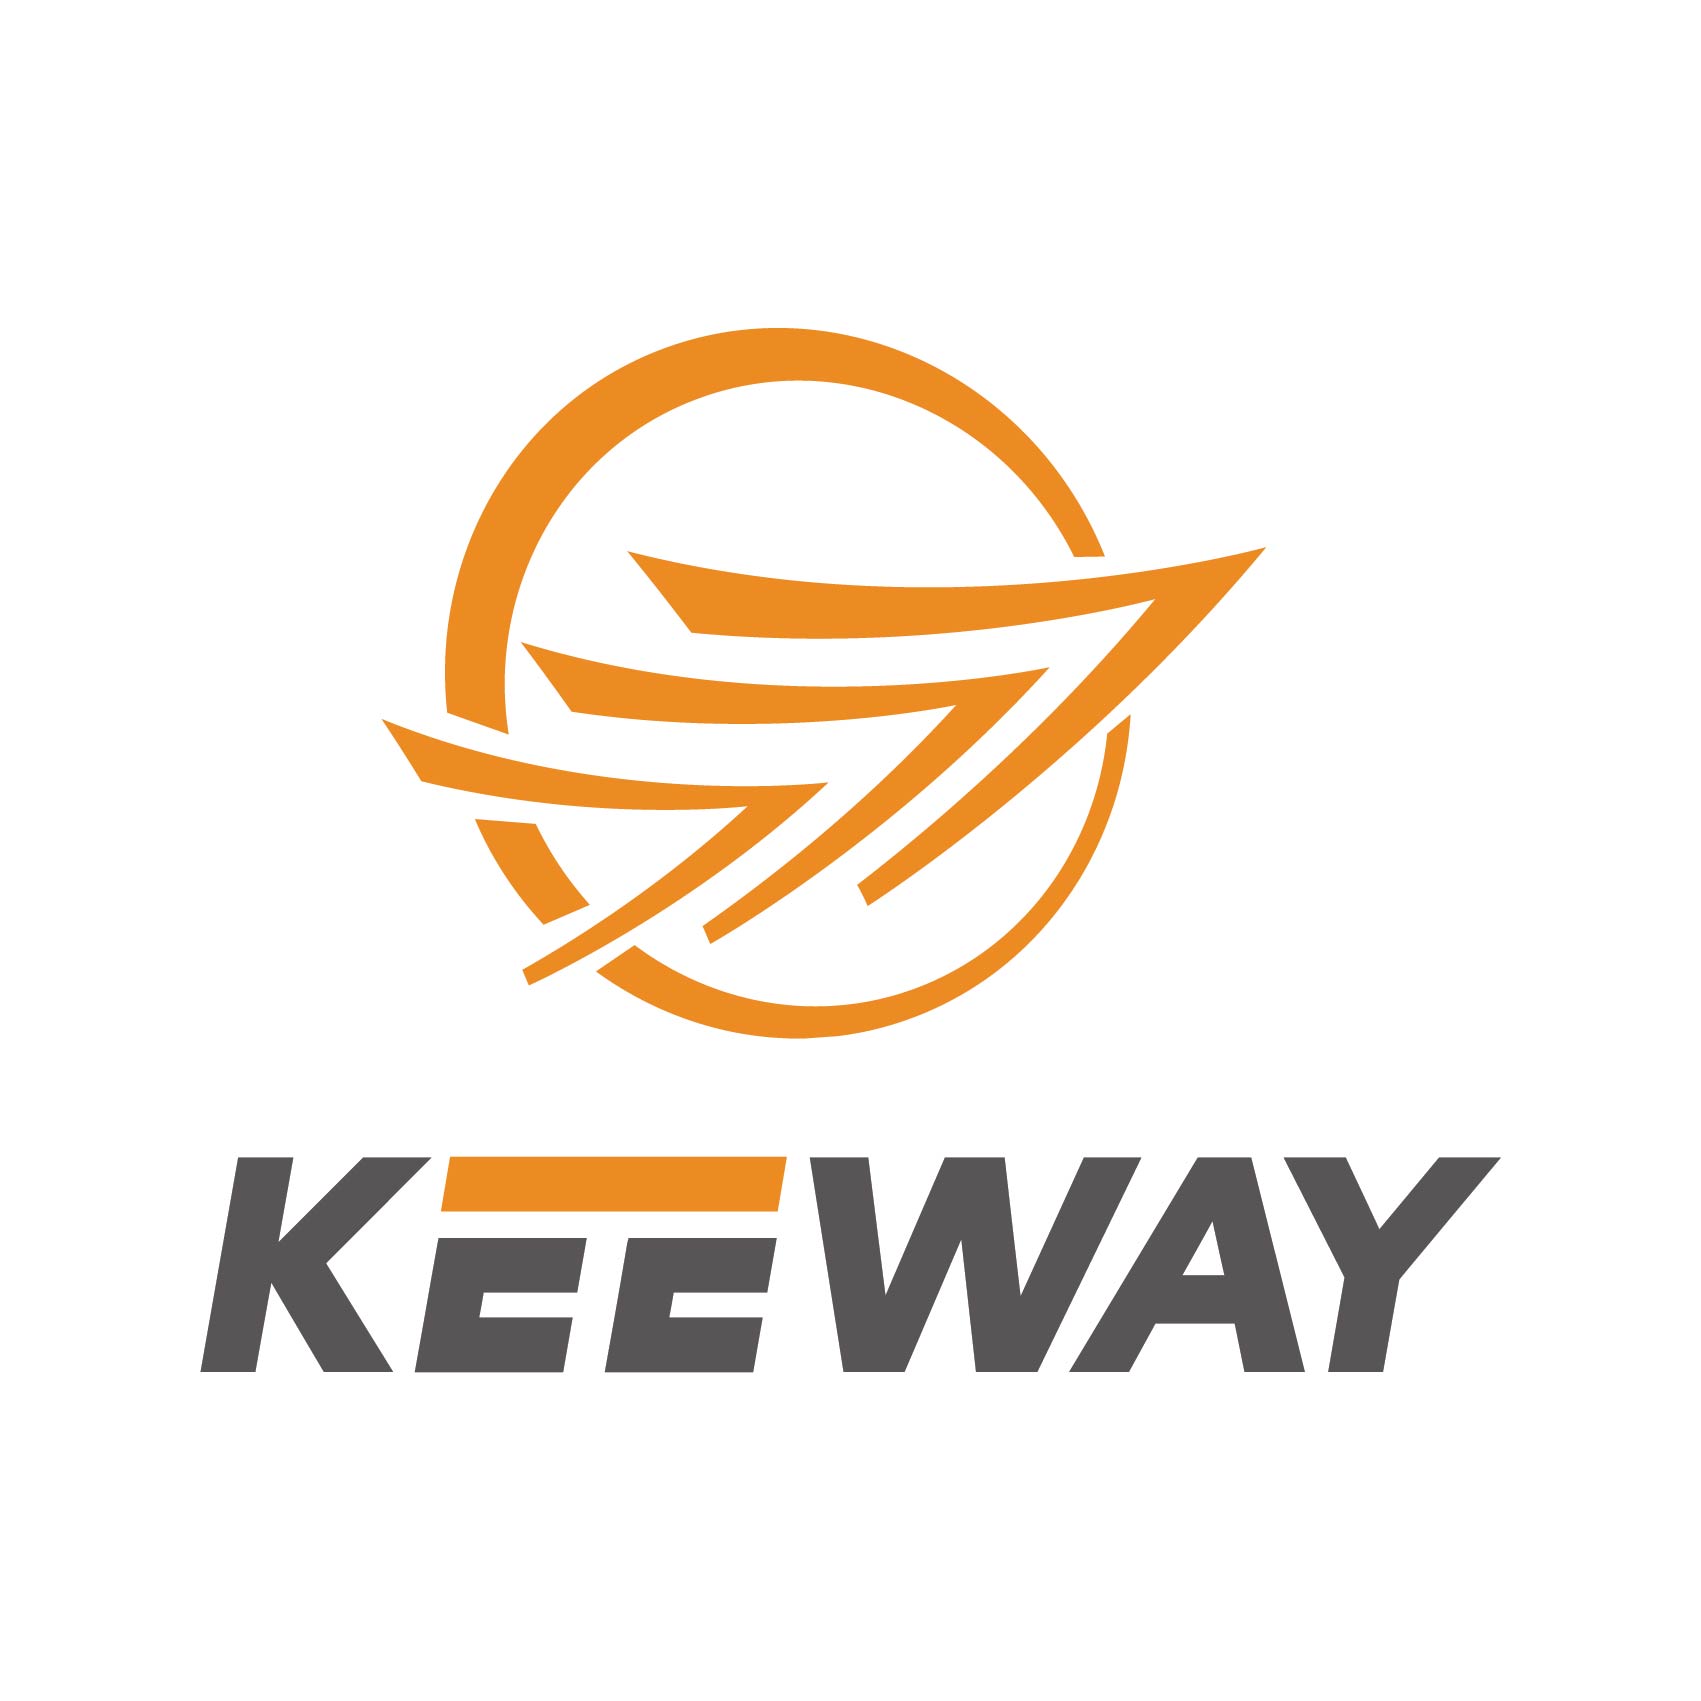 stickers-keeway-ref3keeway-autocollant-keeway-sticker-pour-moto-sport